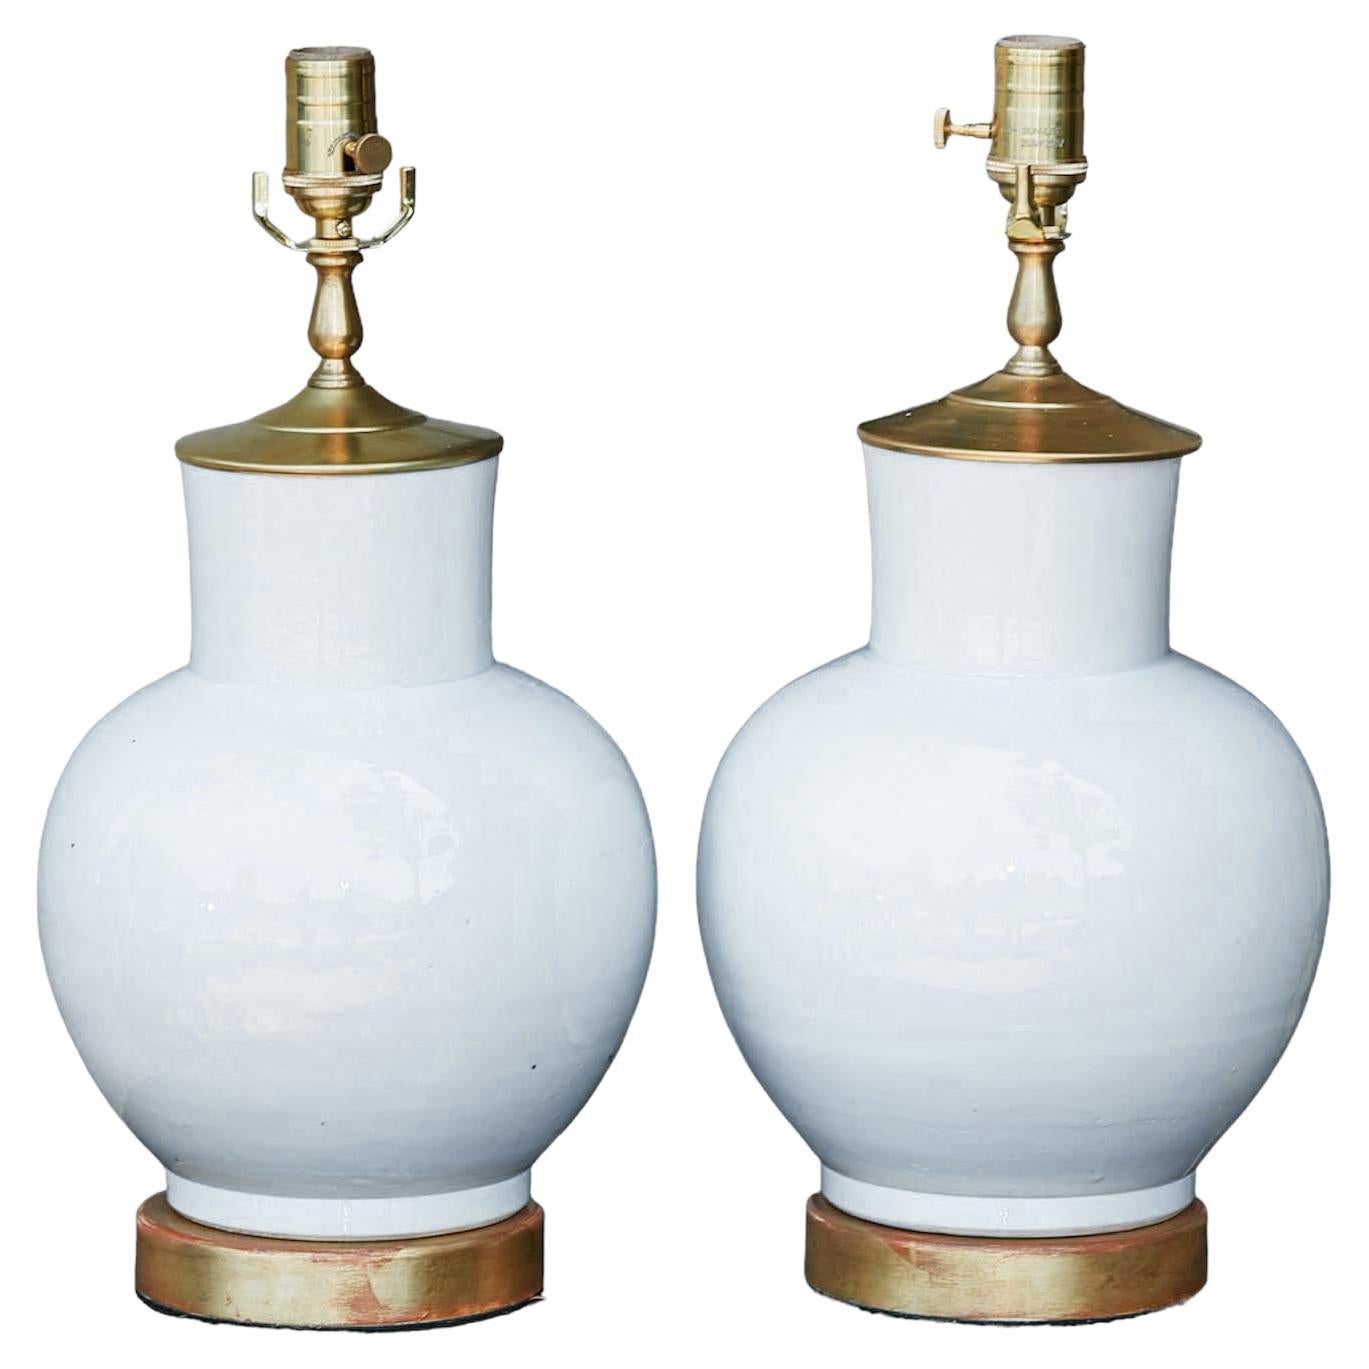 Paire de lampes de table à une lumière en porcelaine asiatique avec bases rondes et dorées